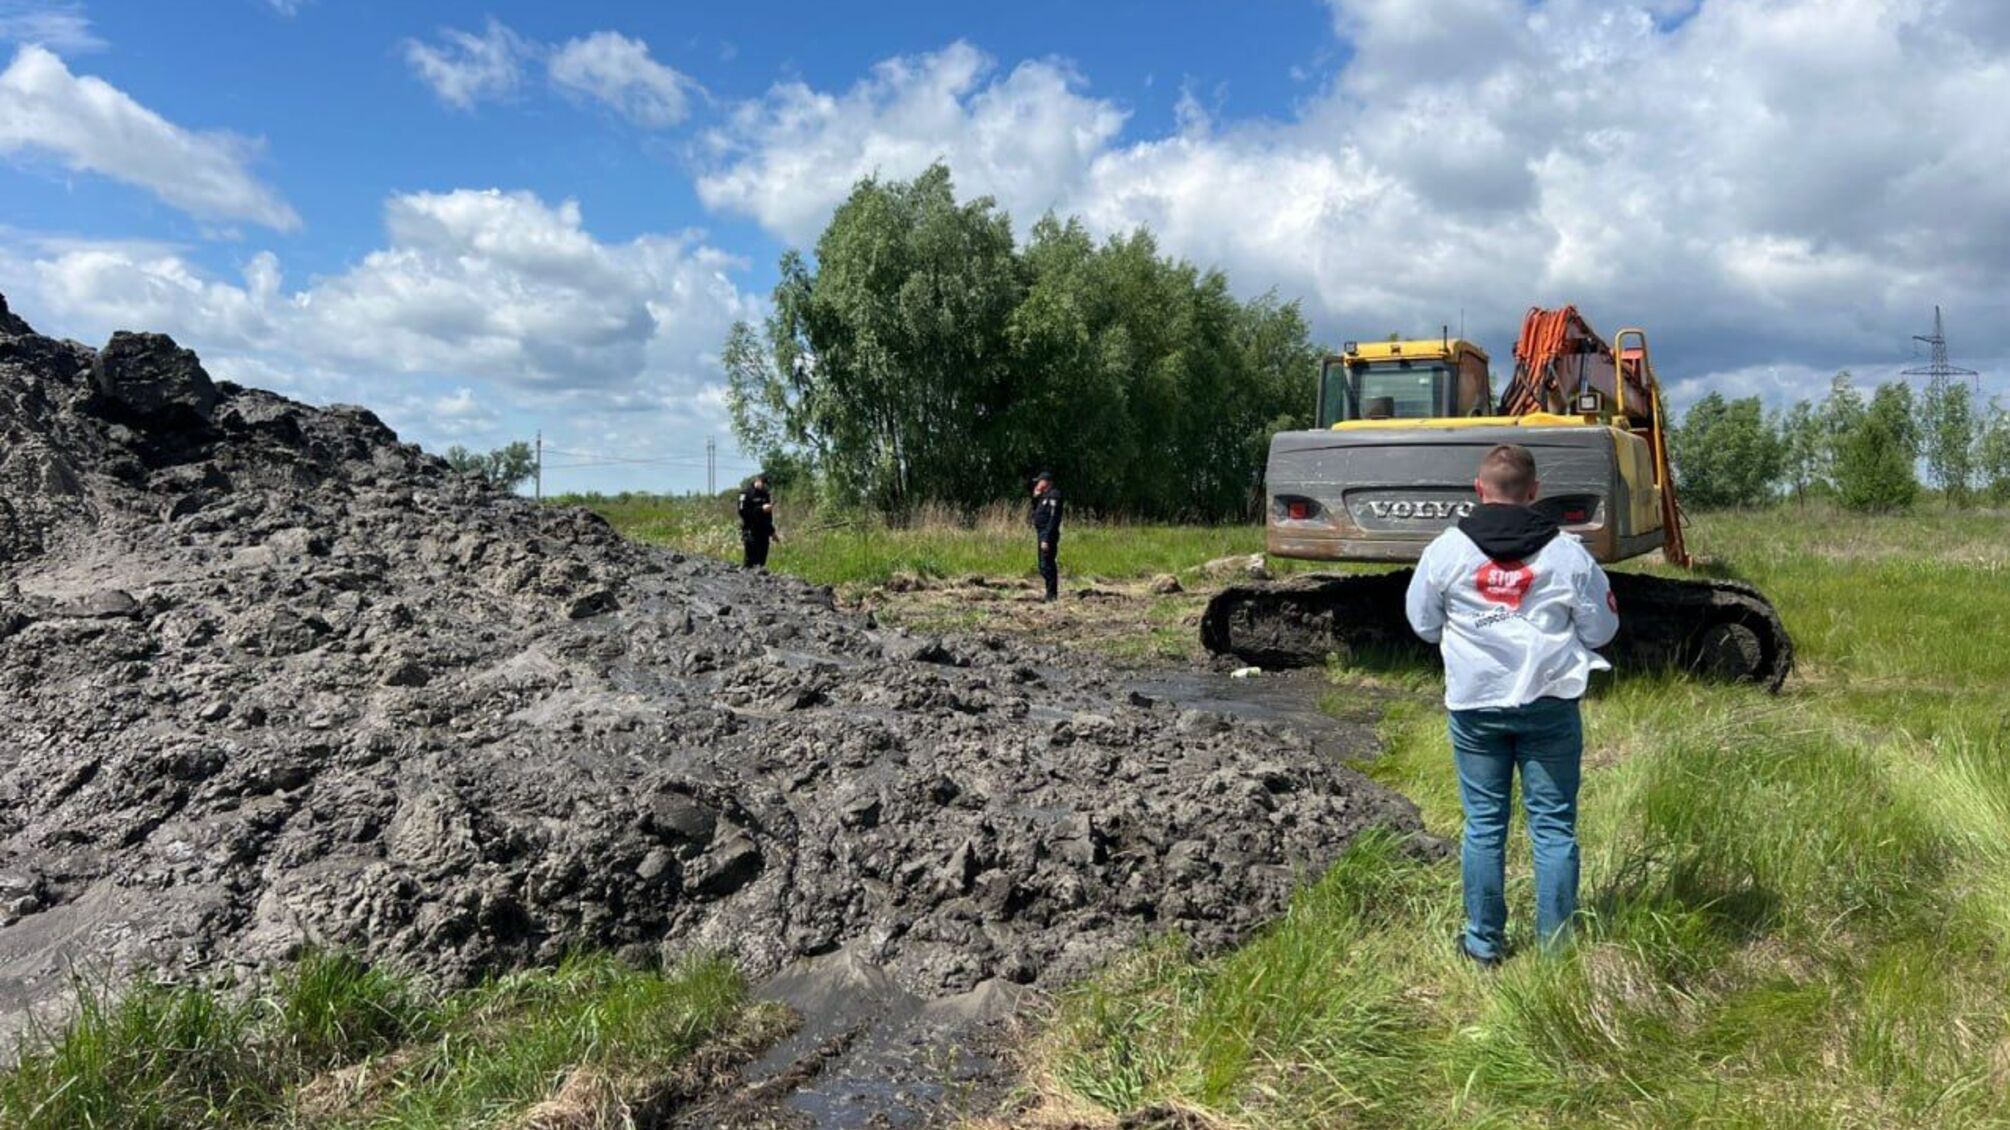 Намывают песок в 'изумрудной сети': журналисты обнаружили вероятно незаконную 'точку' добычи под Киевом